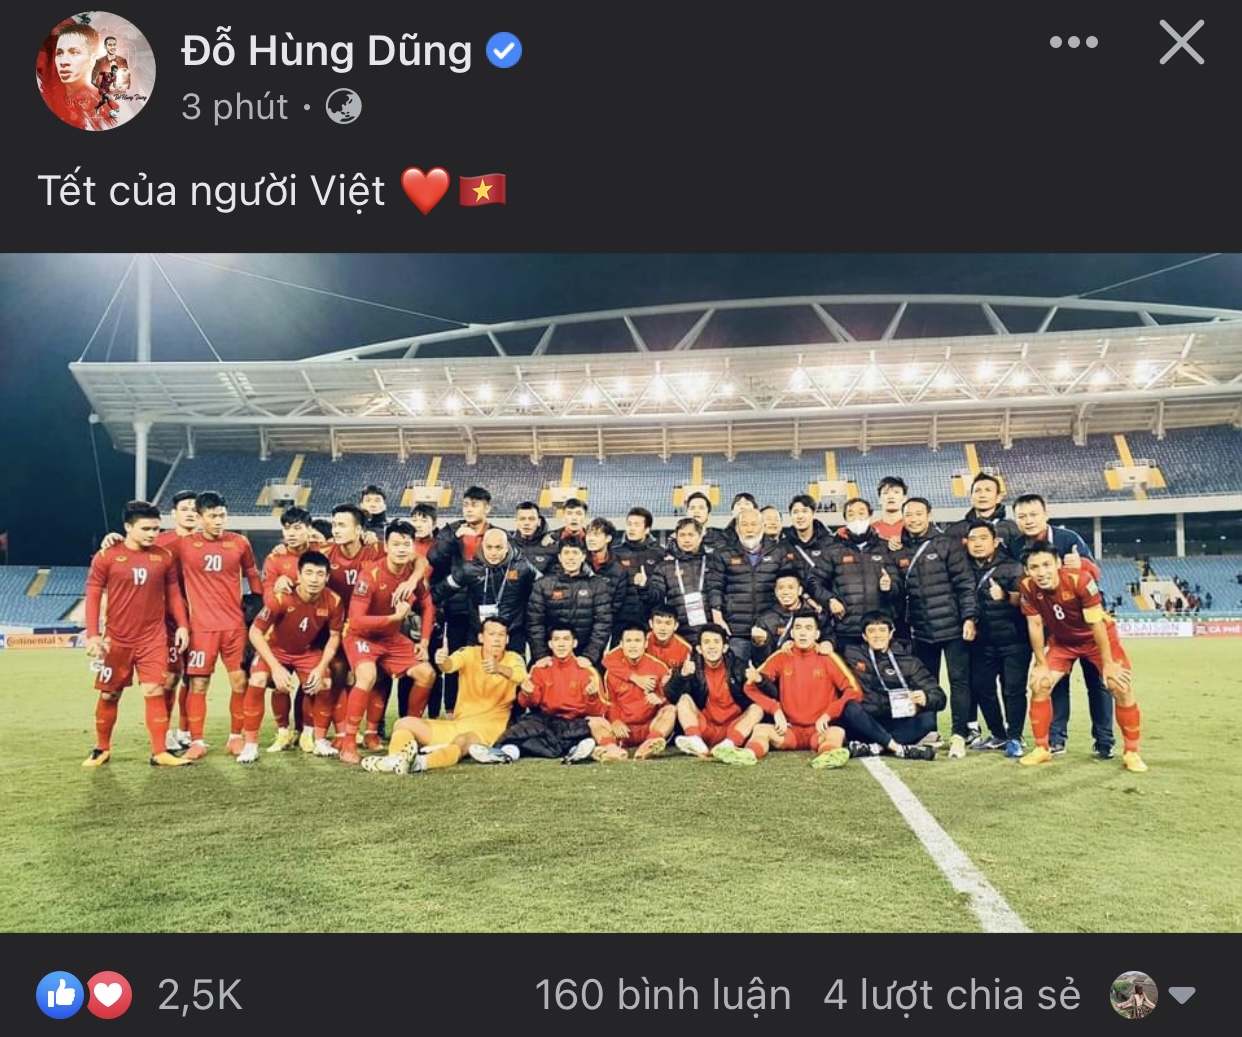 Các cầu thủ ĐT Việt Nam ăn mừng sau khi dành chiến thắng trước Trung Quốc - Ảnh 1.